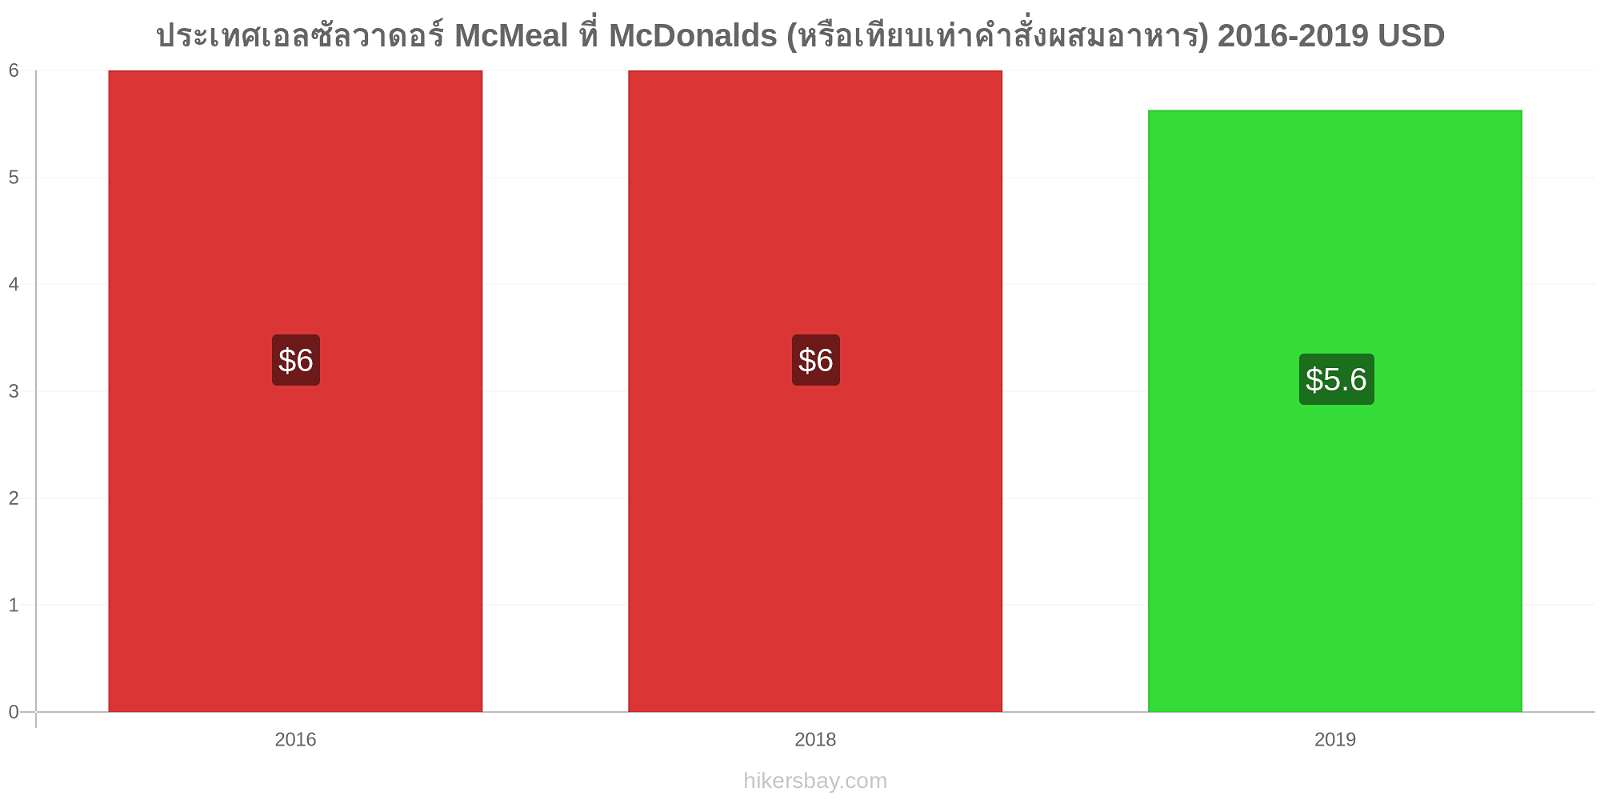 ประเทศเอลซัลวาดอร์ การเปลี่ยนแปลงราคา McMeal ที่ McDonalds (หรือเทียบเท่าคำสั่งผสมอาหาร) hikersbay.com